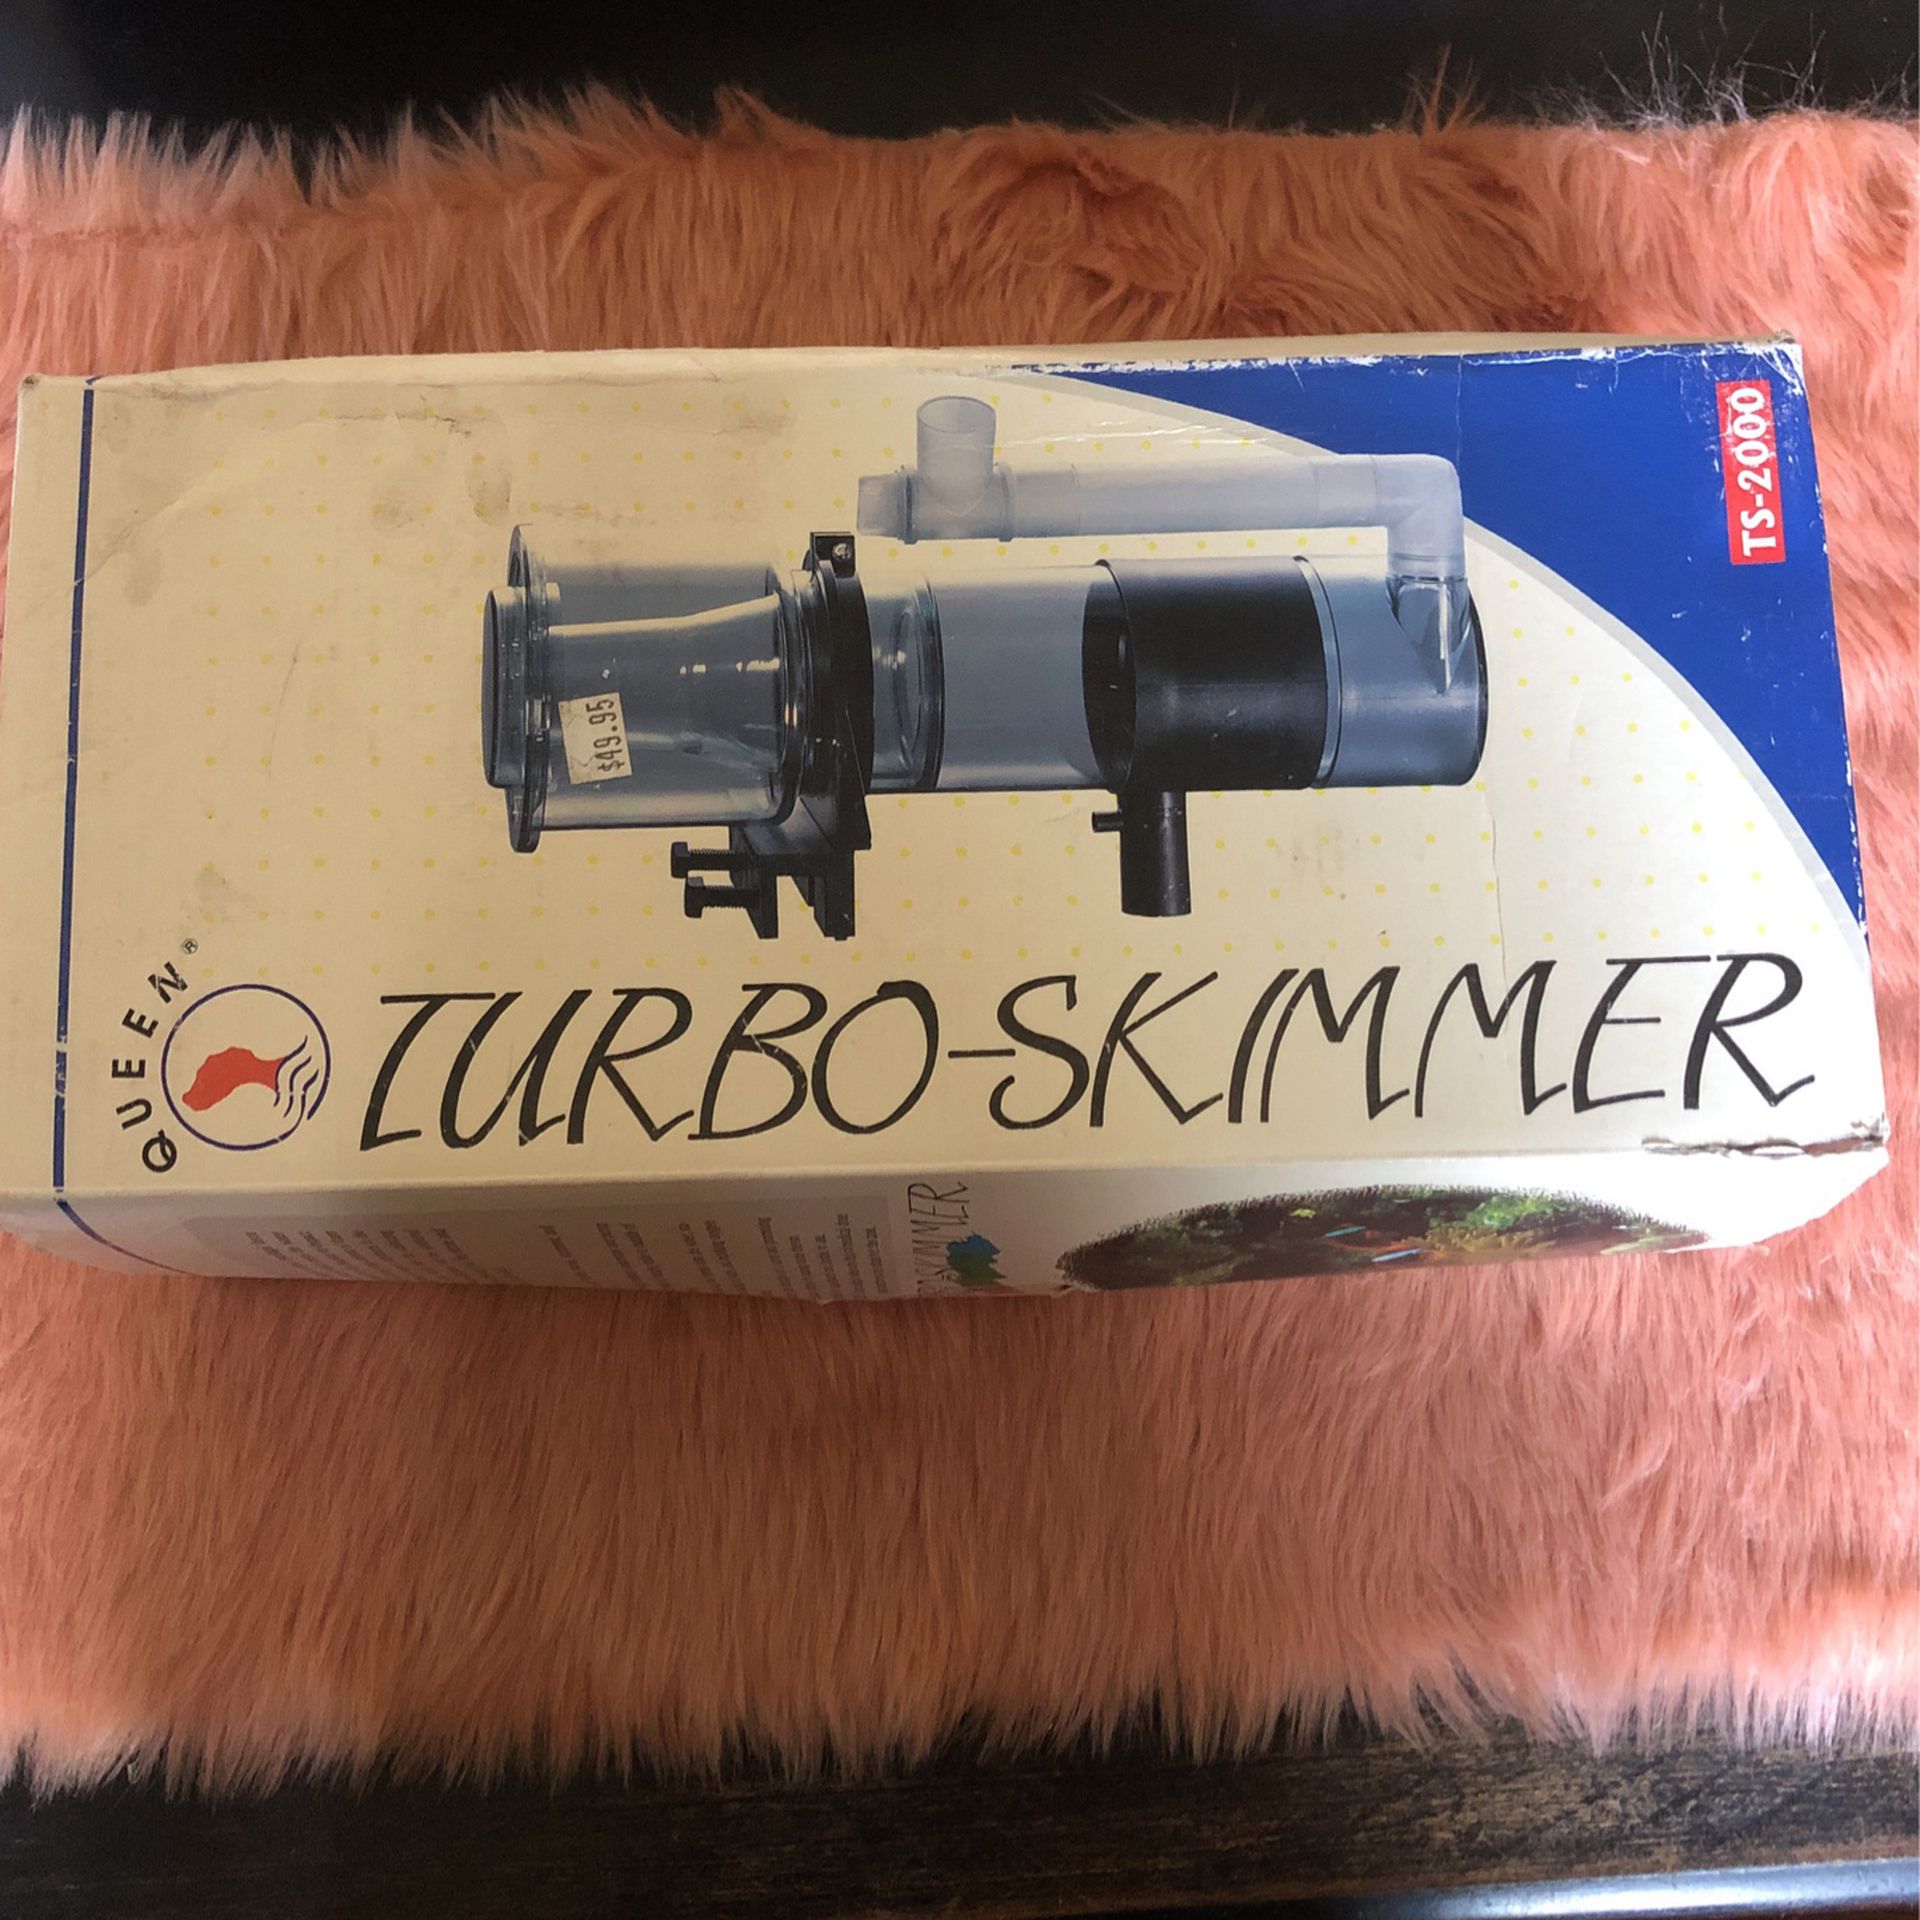 Turbo Skimmer